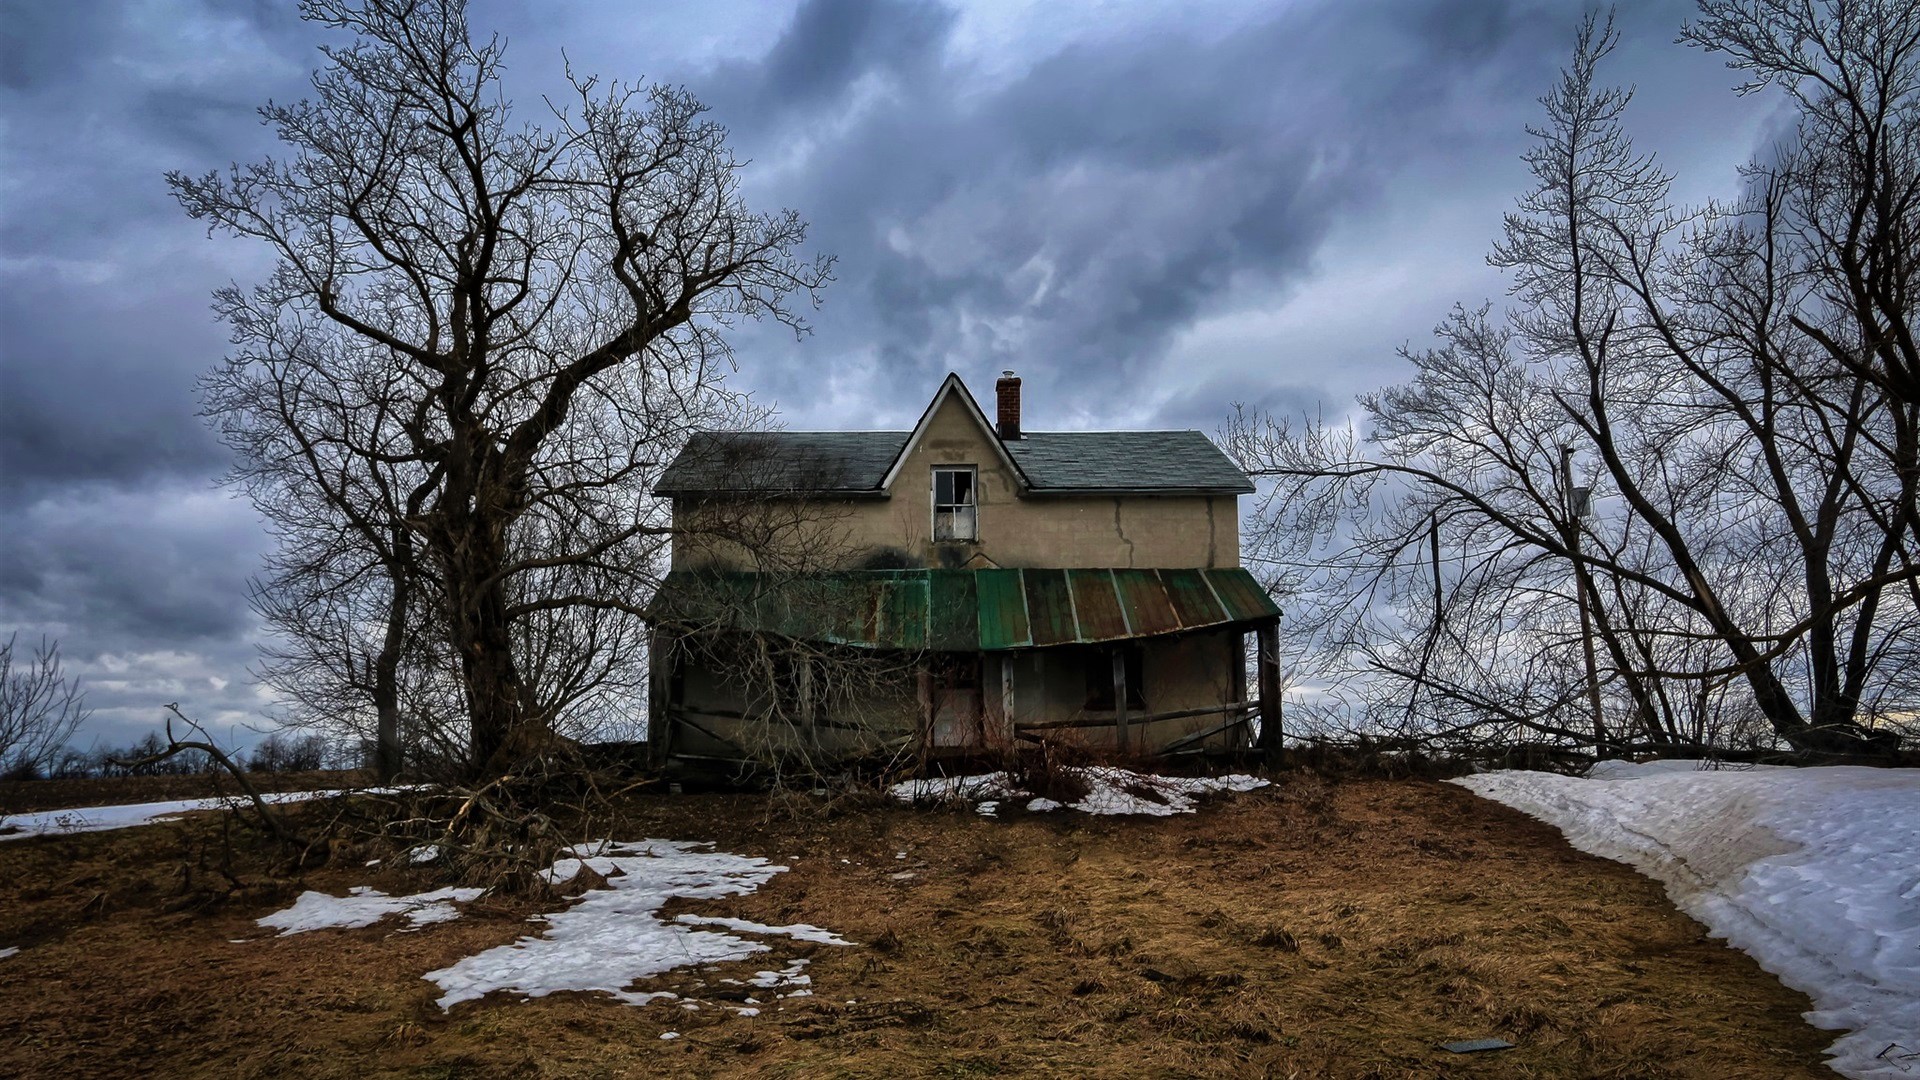 Заброшенный дом в лесу зимой